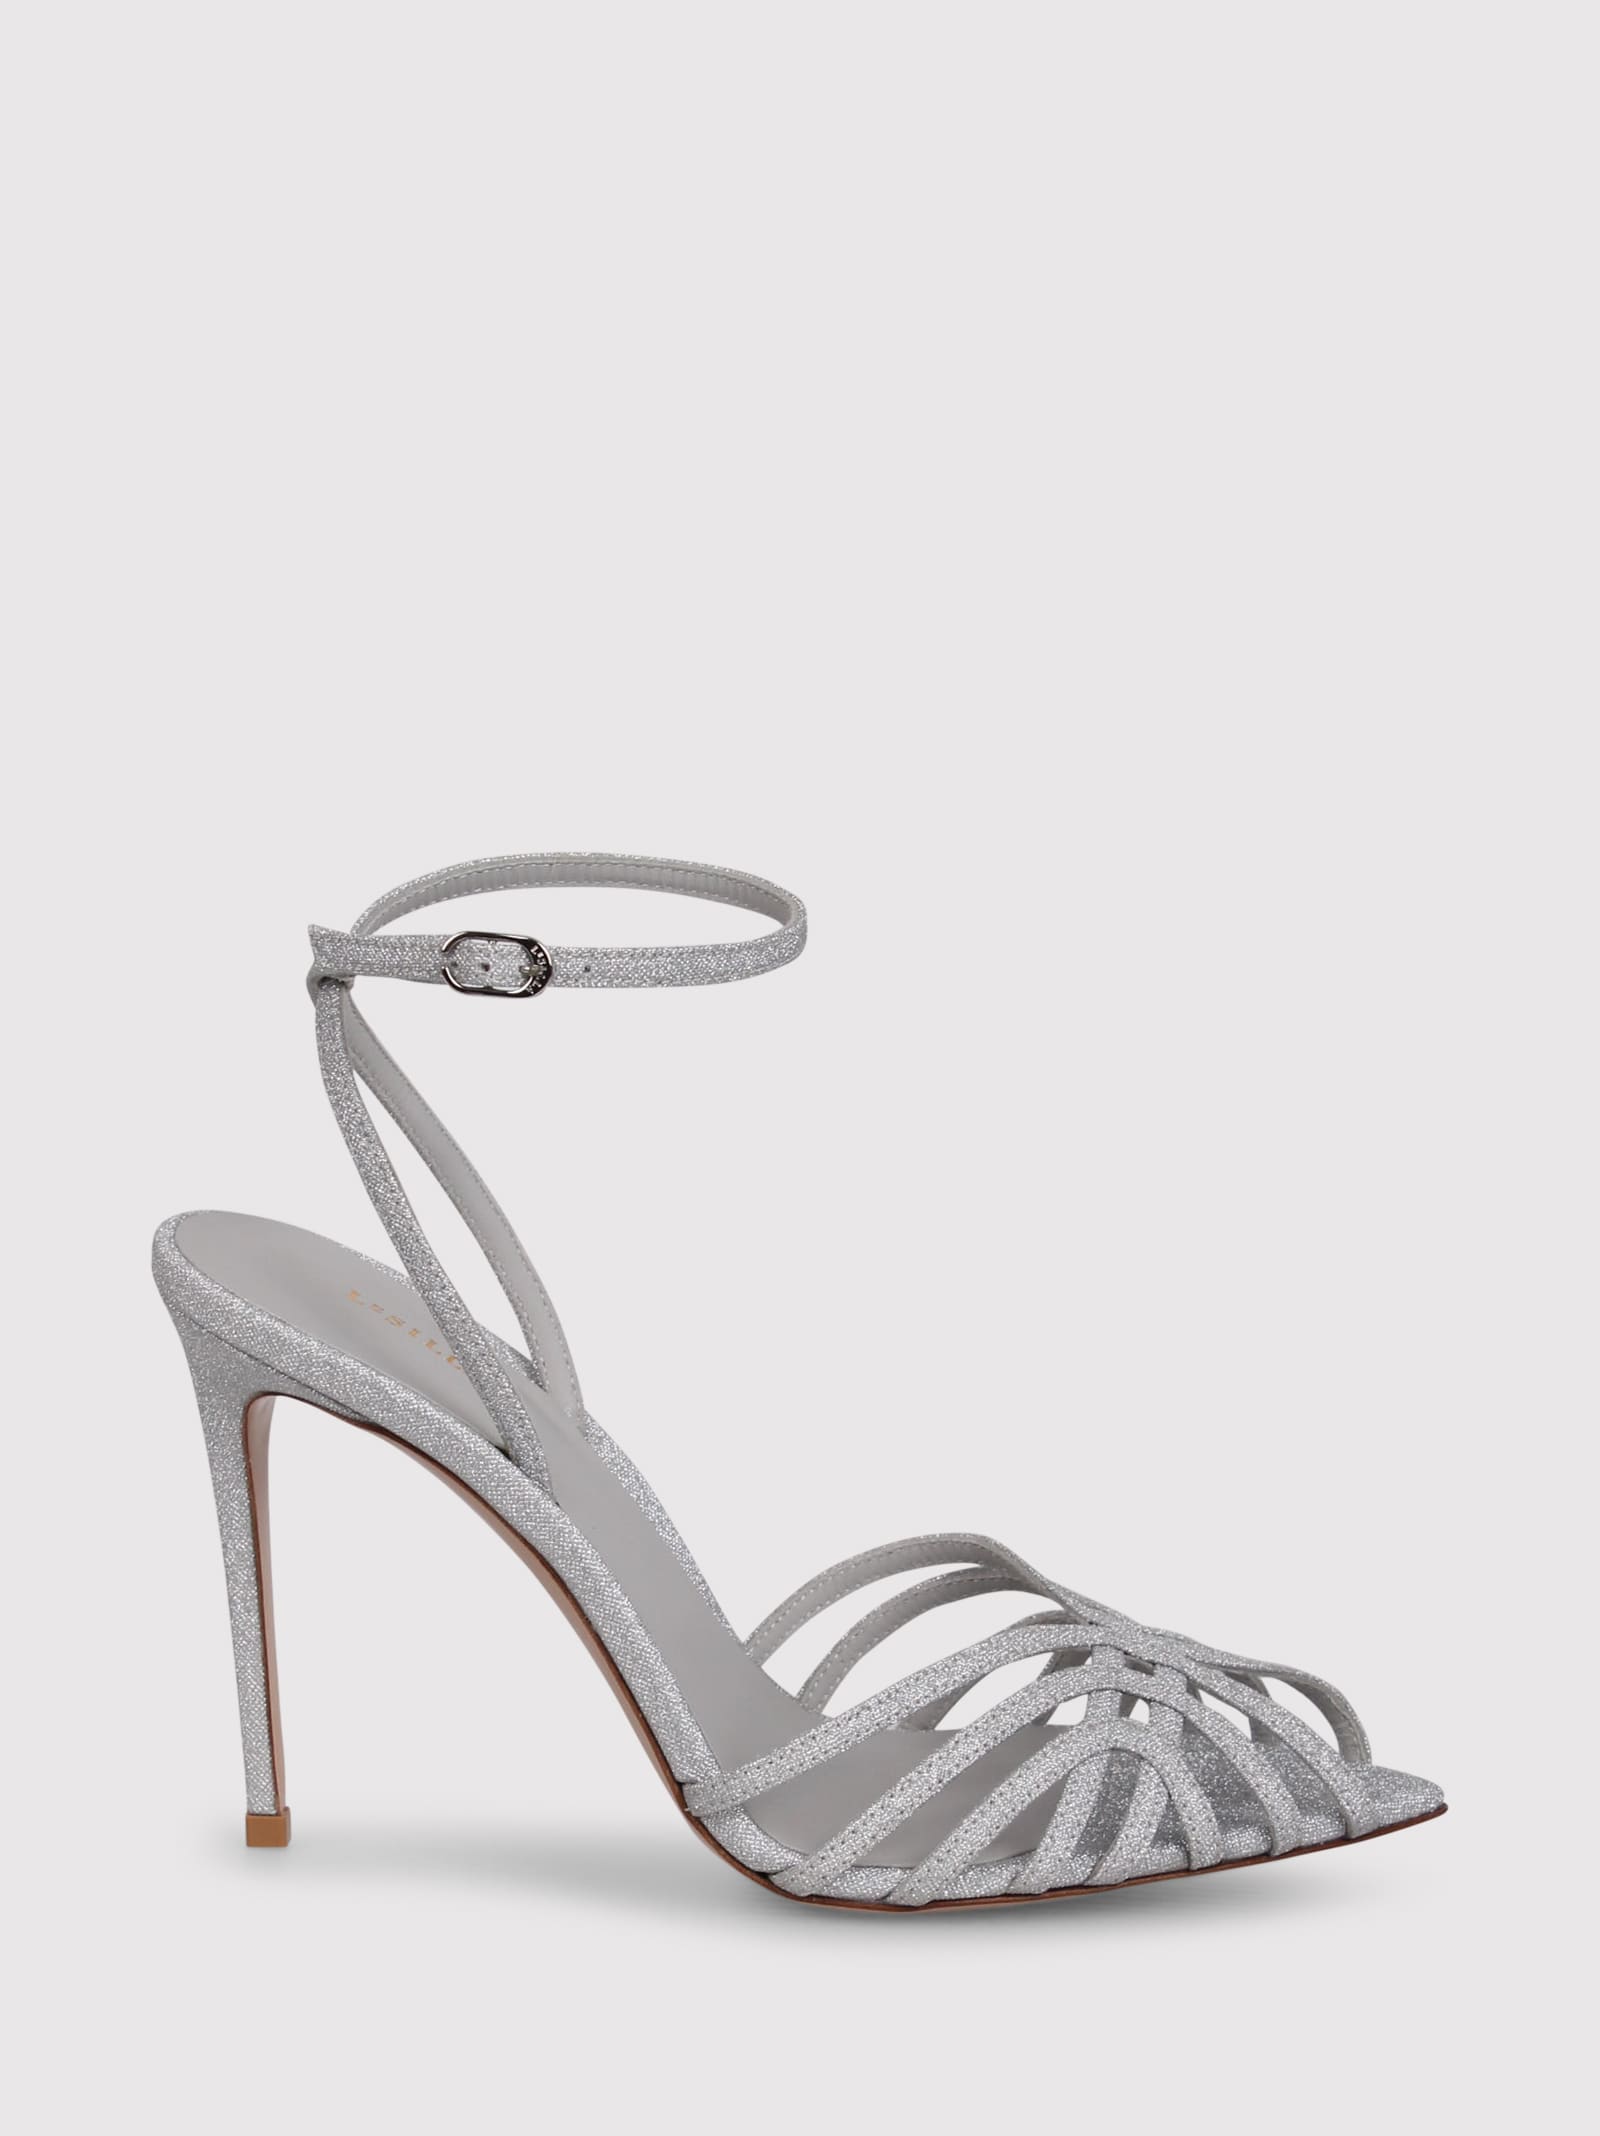 Shop Le Silla Embrace Glitter Sandals